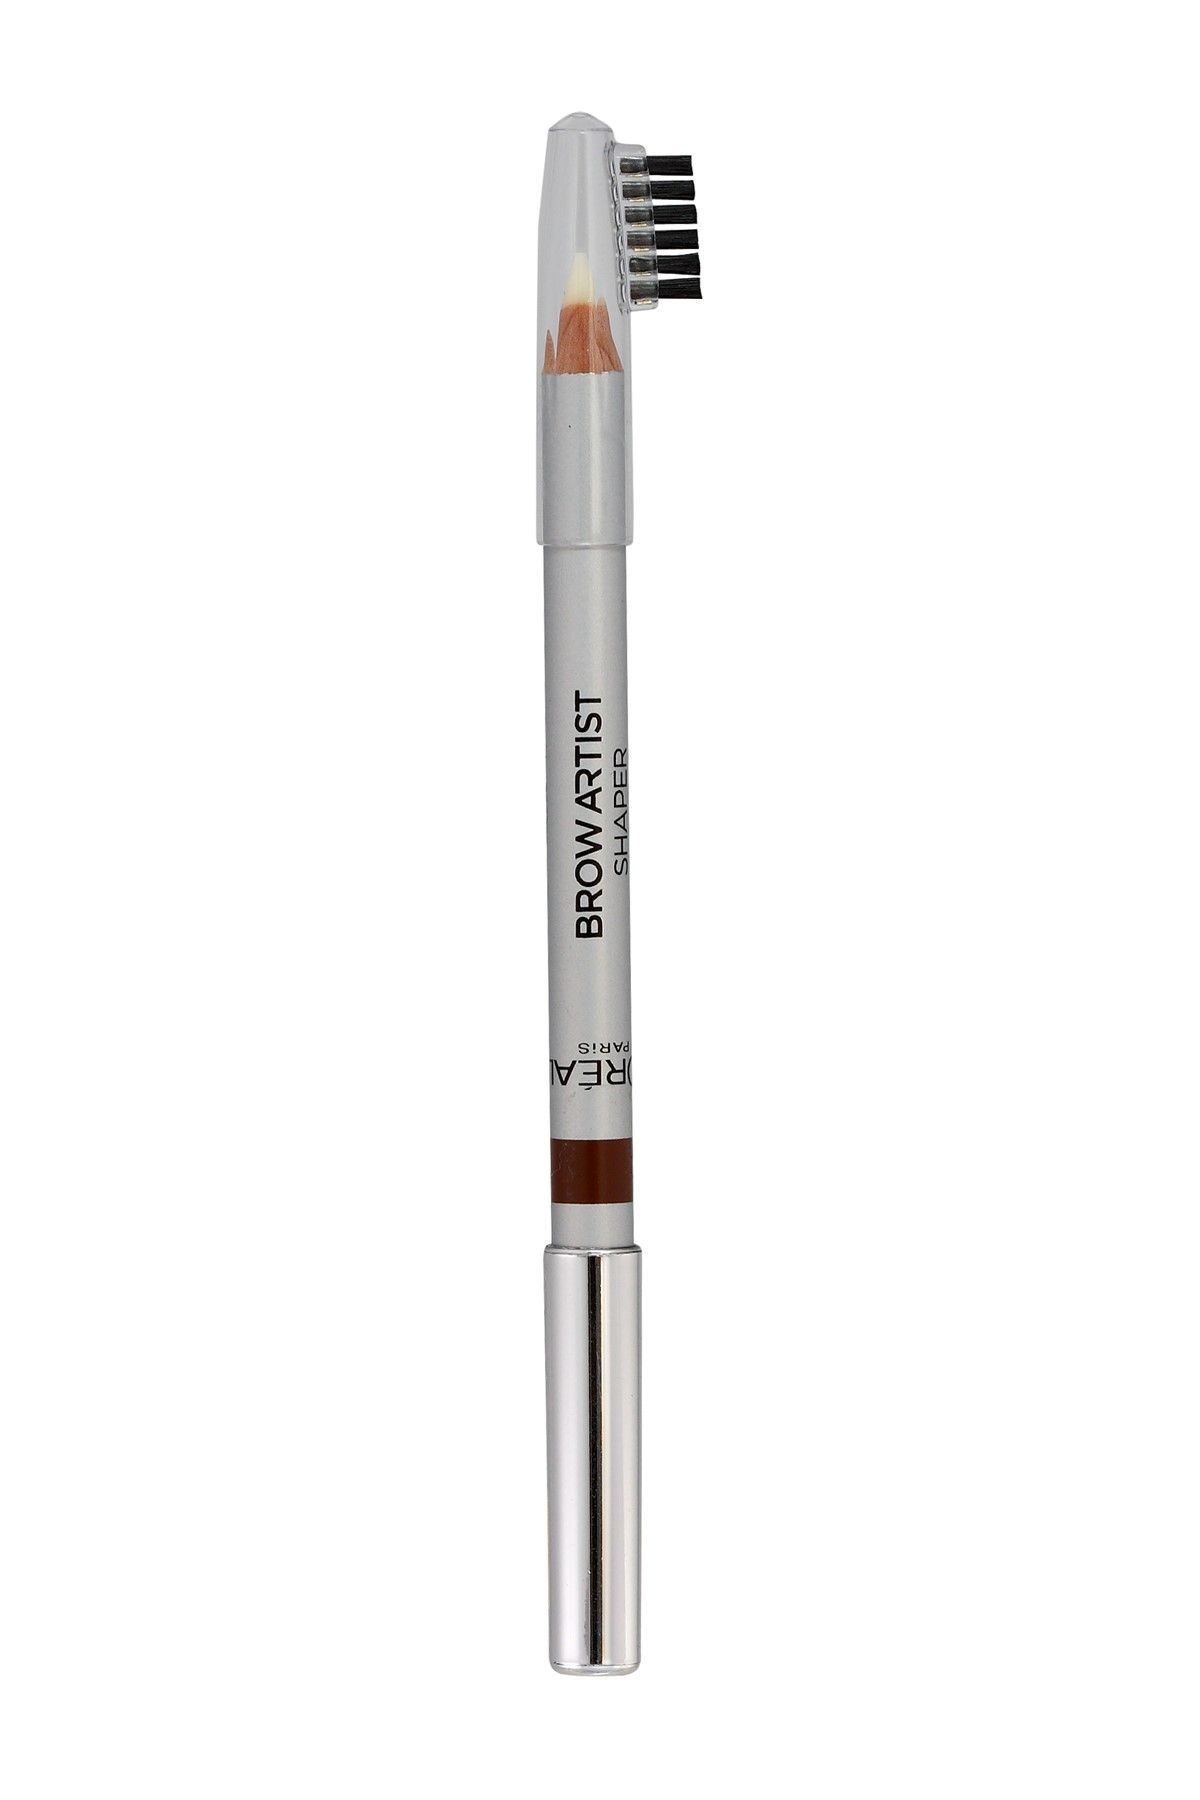 L'Oreal Paris مداد ابرو دو طرفه Brow Artist Shaper رنگ سفید و قهوه ای شماره 03